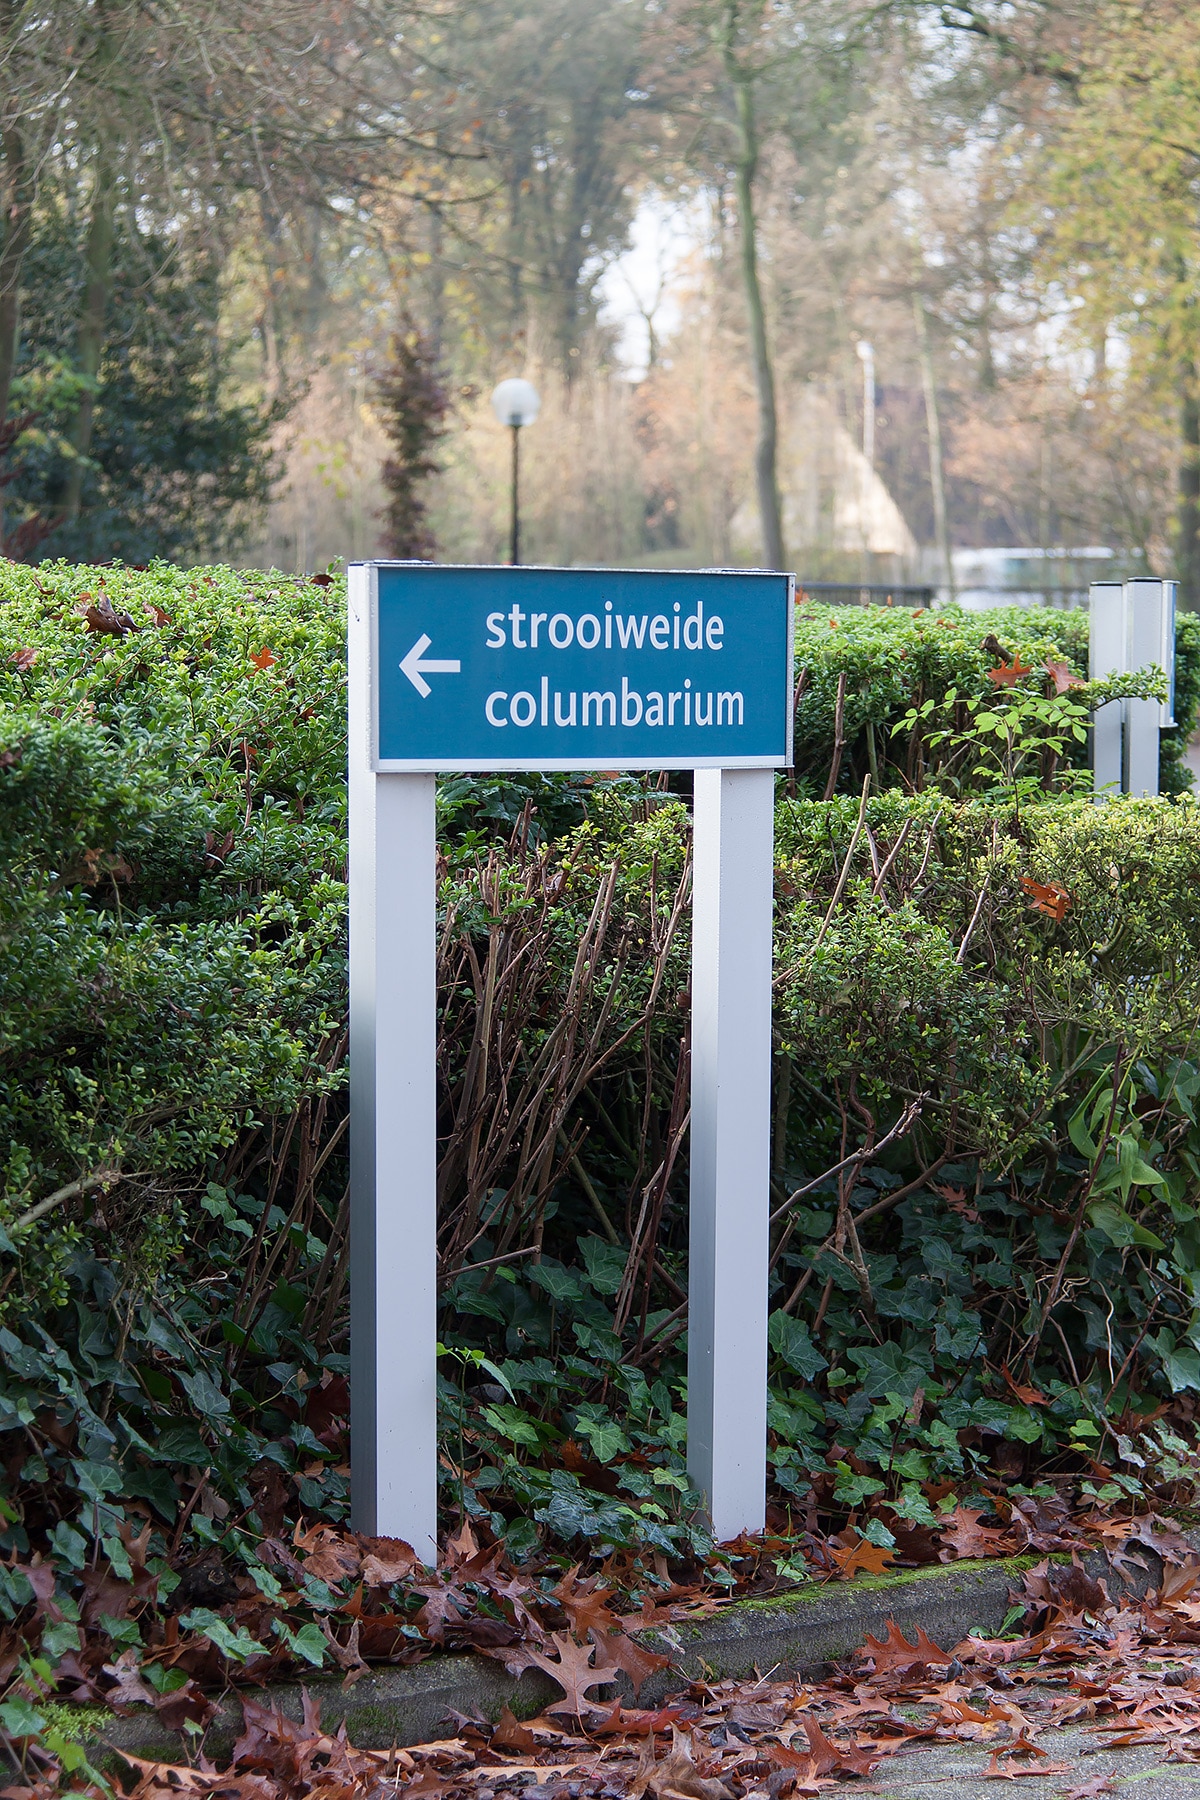 Buitensignalisatie - Crematorium Pontes - Turnhout - Sign & Display